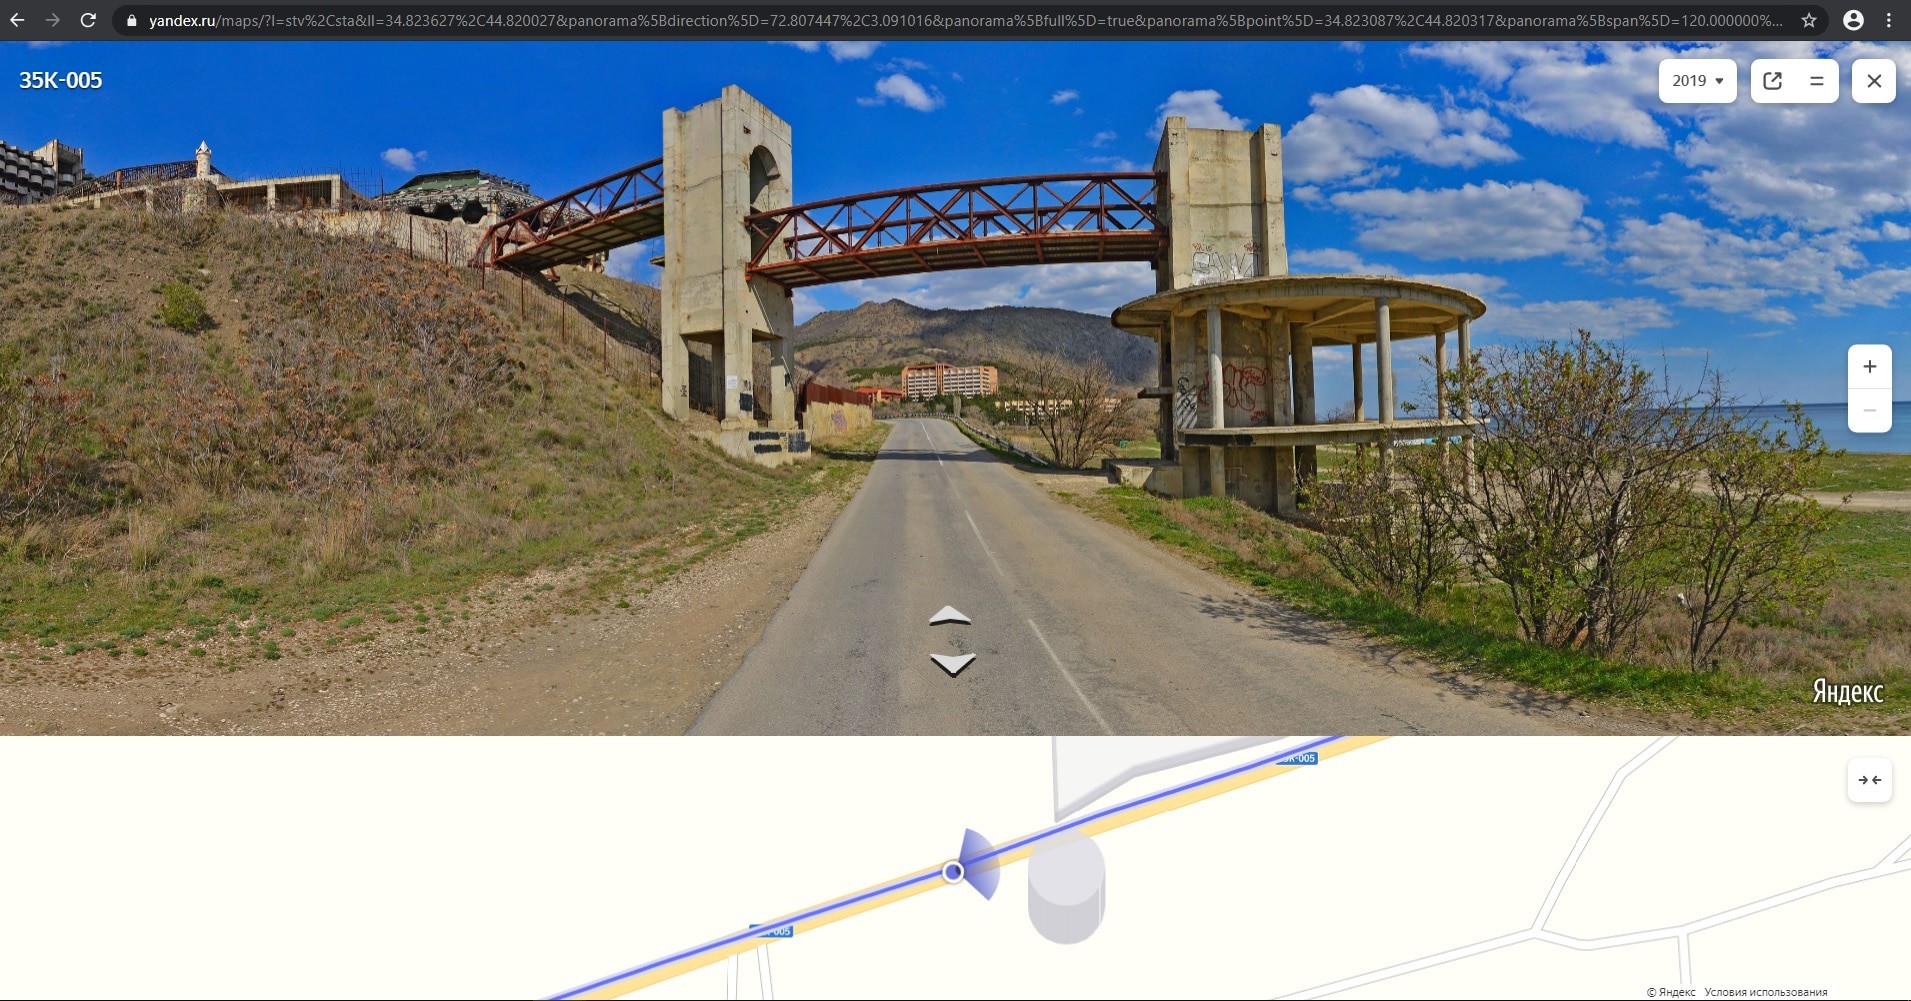 Скриншот фотографии на сервисе 'Яндекс.Карты' с мостом в Крыму